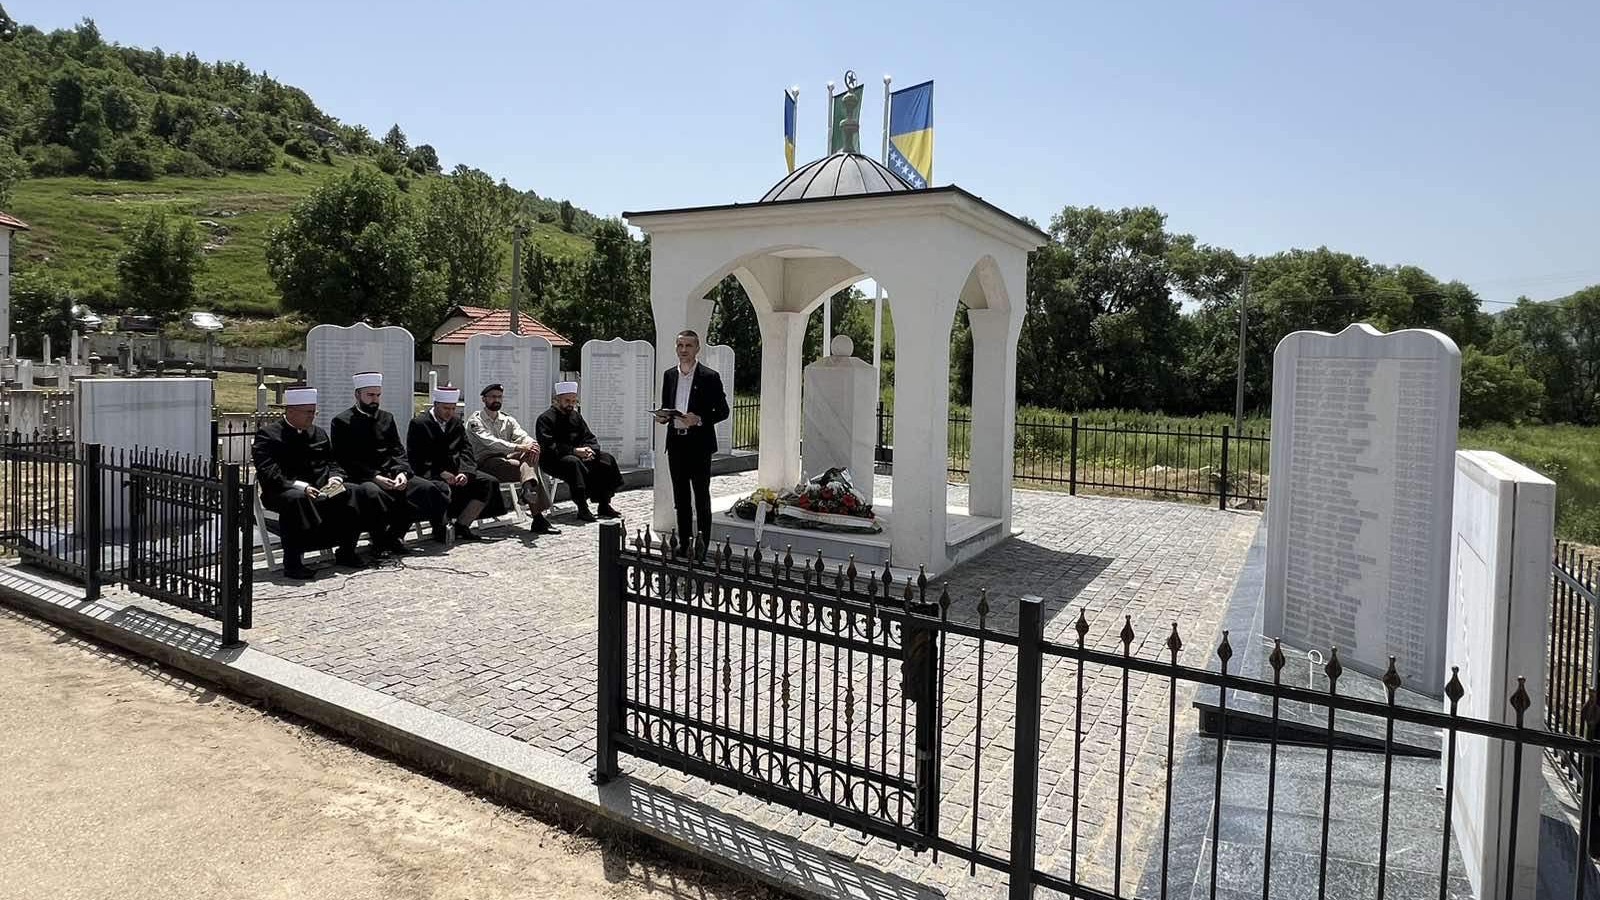 Obilježena 32. godišnjica stradanja i egzodusa Bošnjaka u Gacku